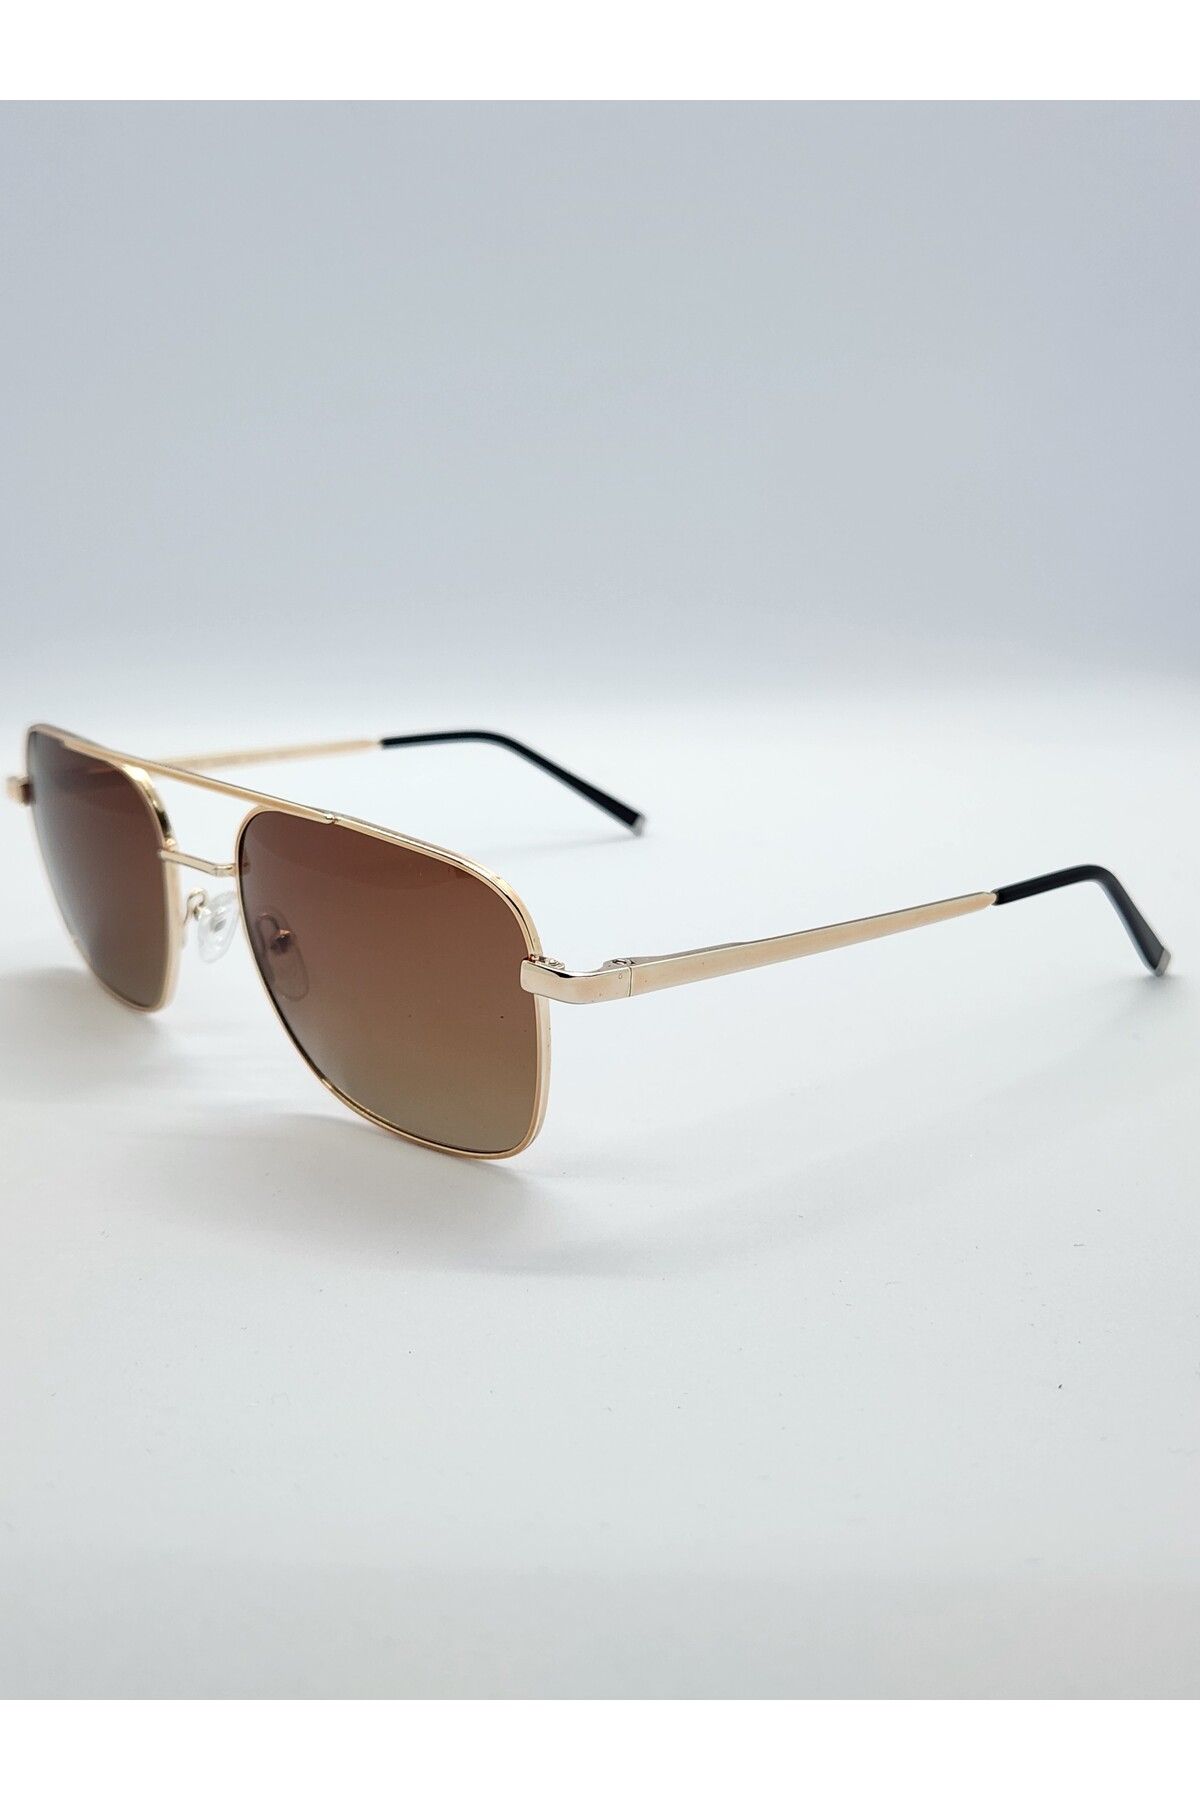 Benx Sunglasses Köprülü Model Altın Renk Erkek Güneş Gözlüğü